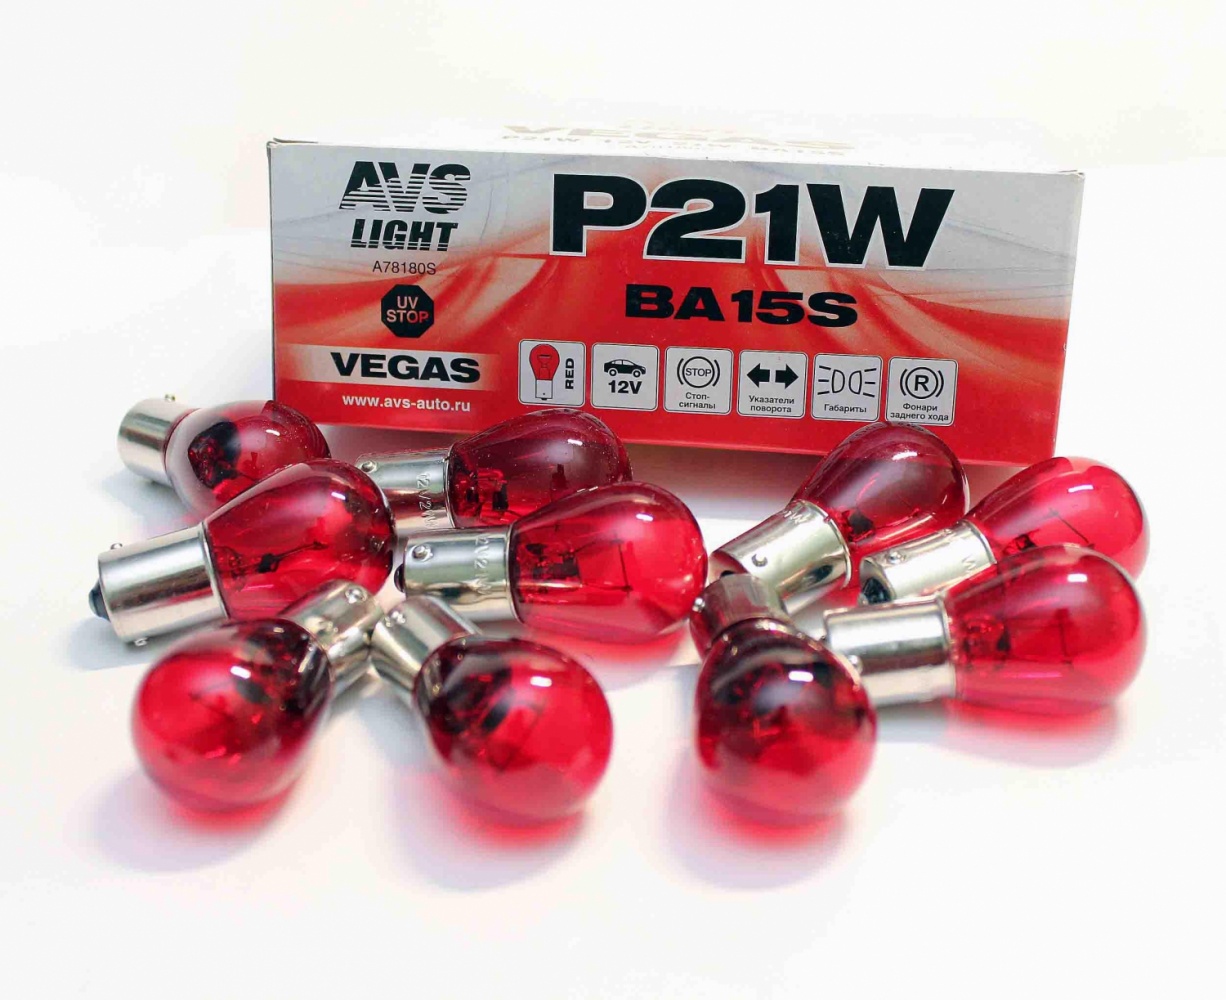 Лампа AVS Vegas 12V. P21W (BA15S) red BOX (10 шт.)